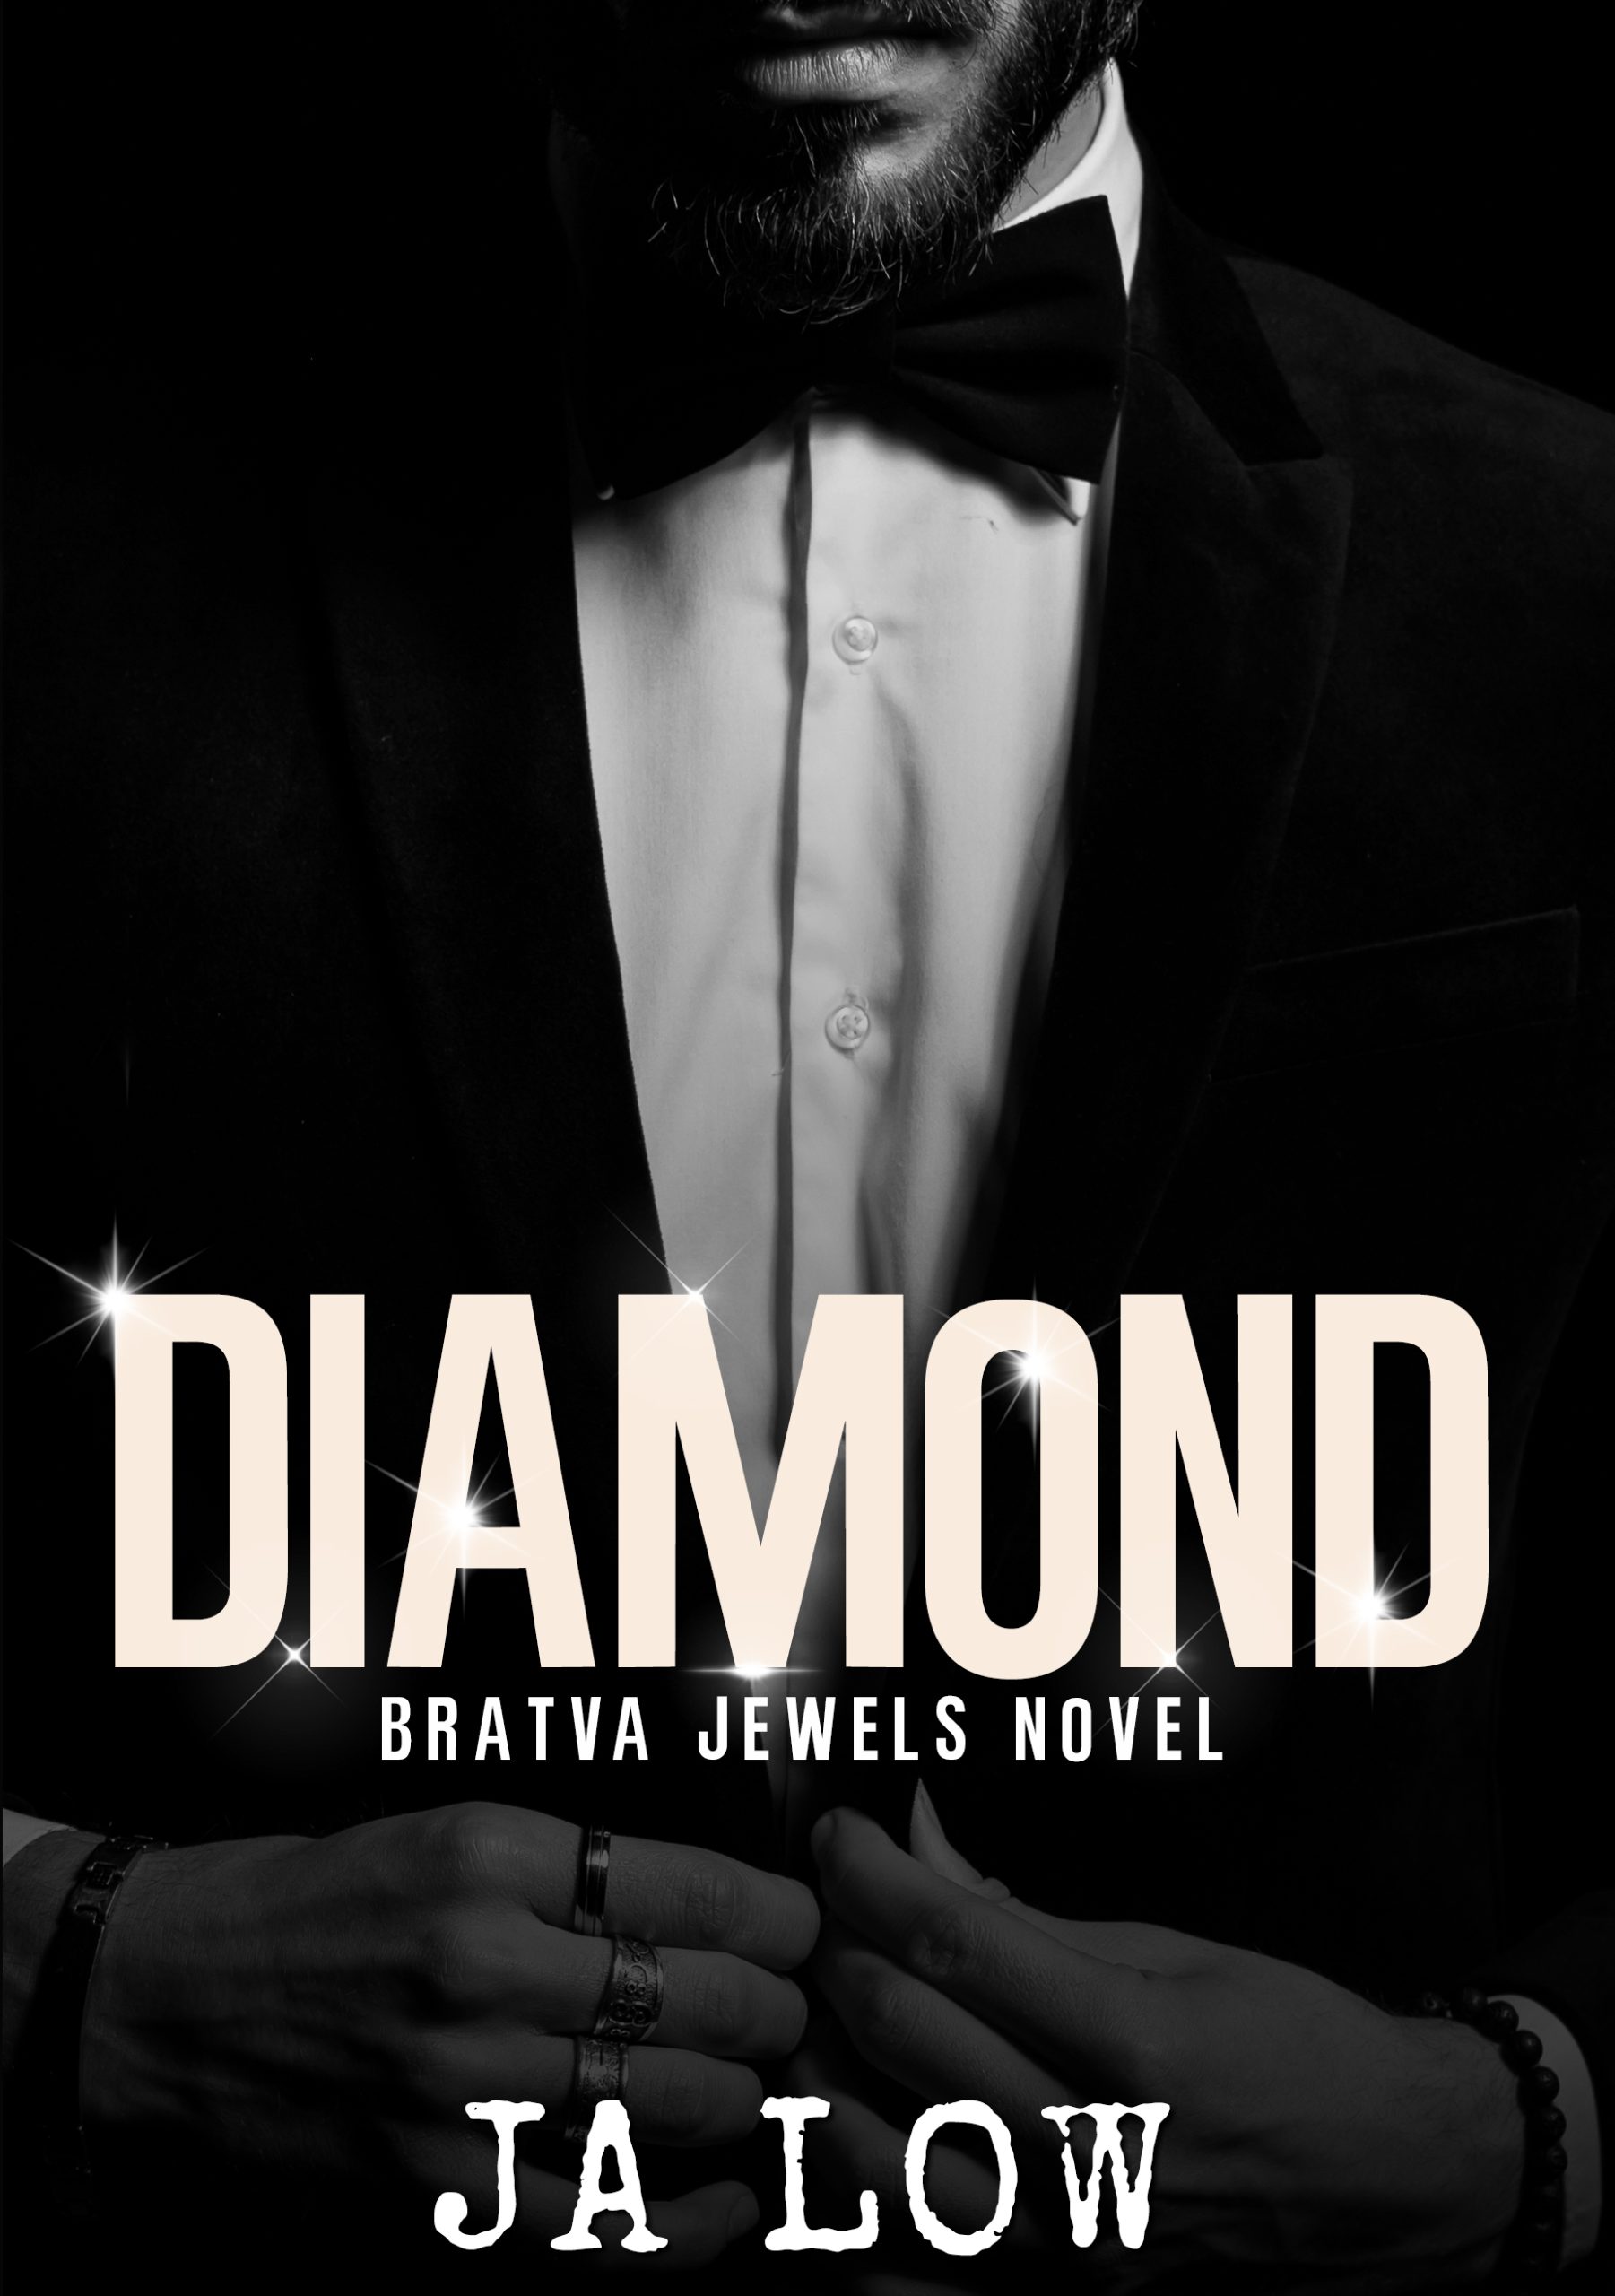 Diamond by J.A. Low PDF Download